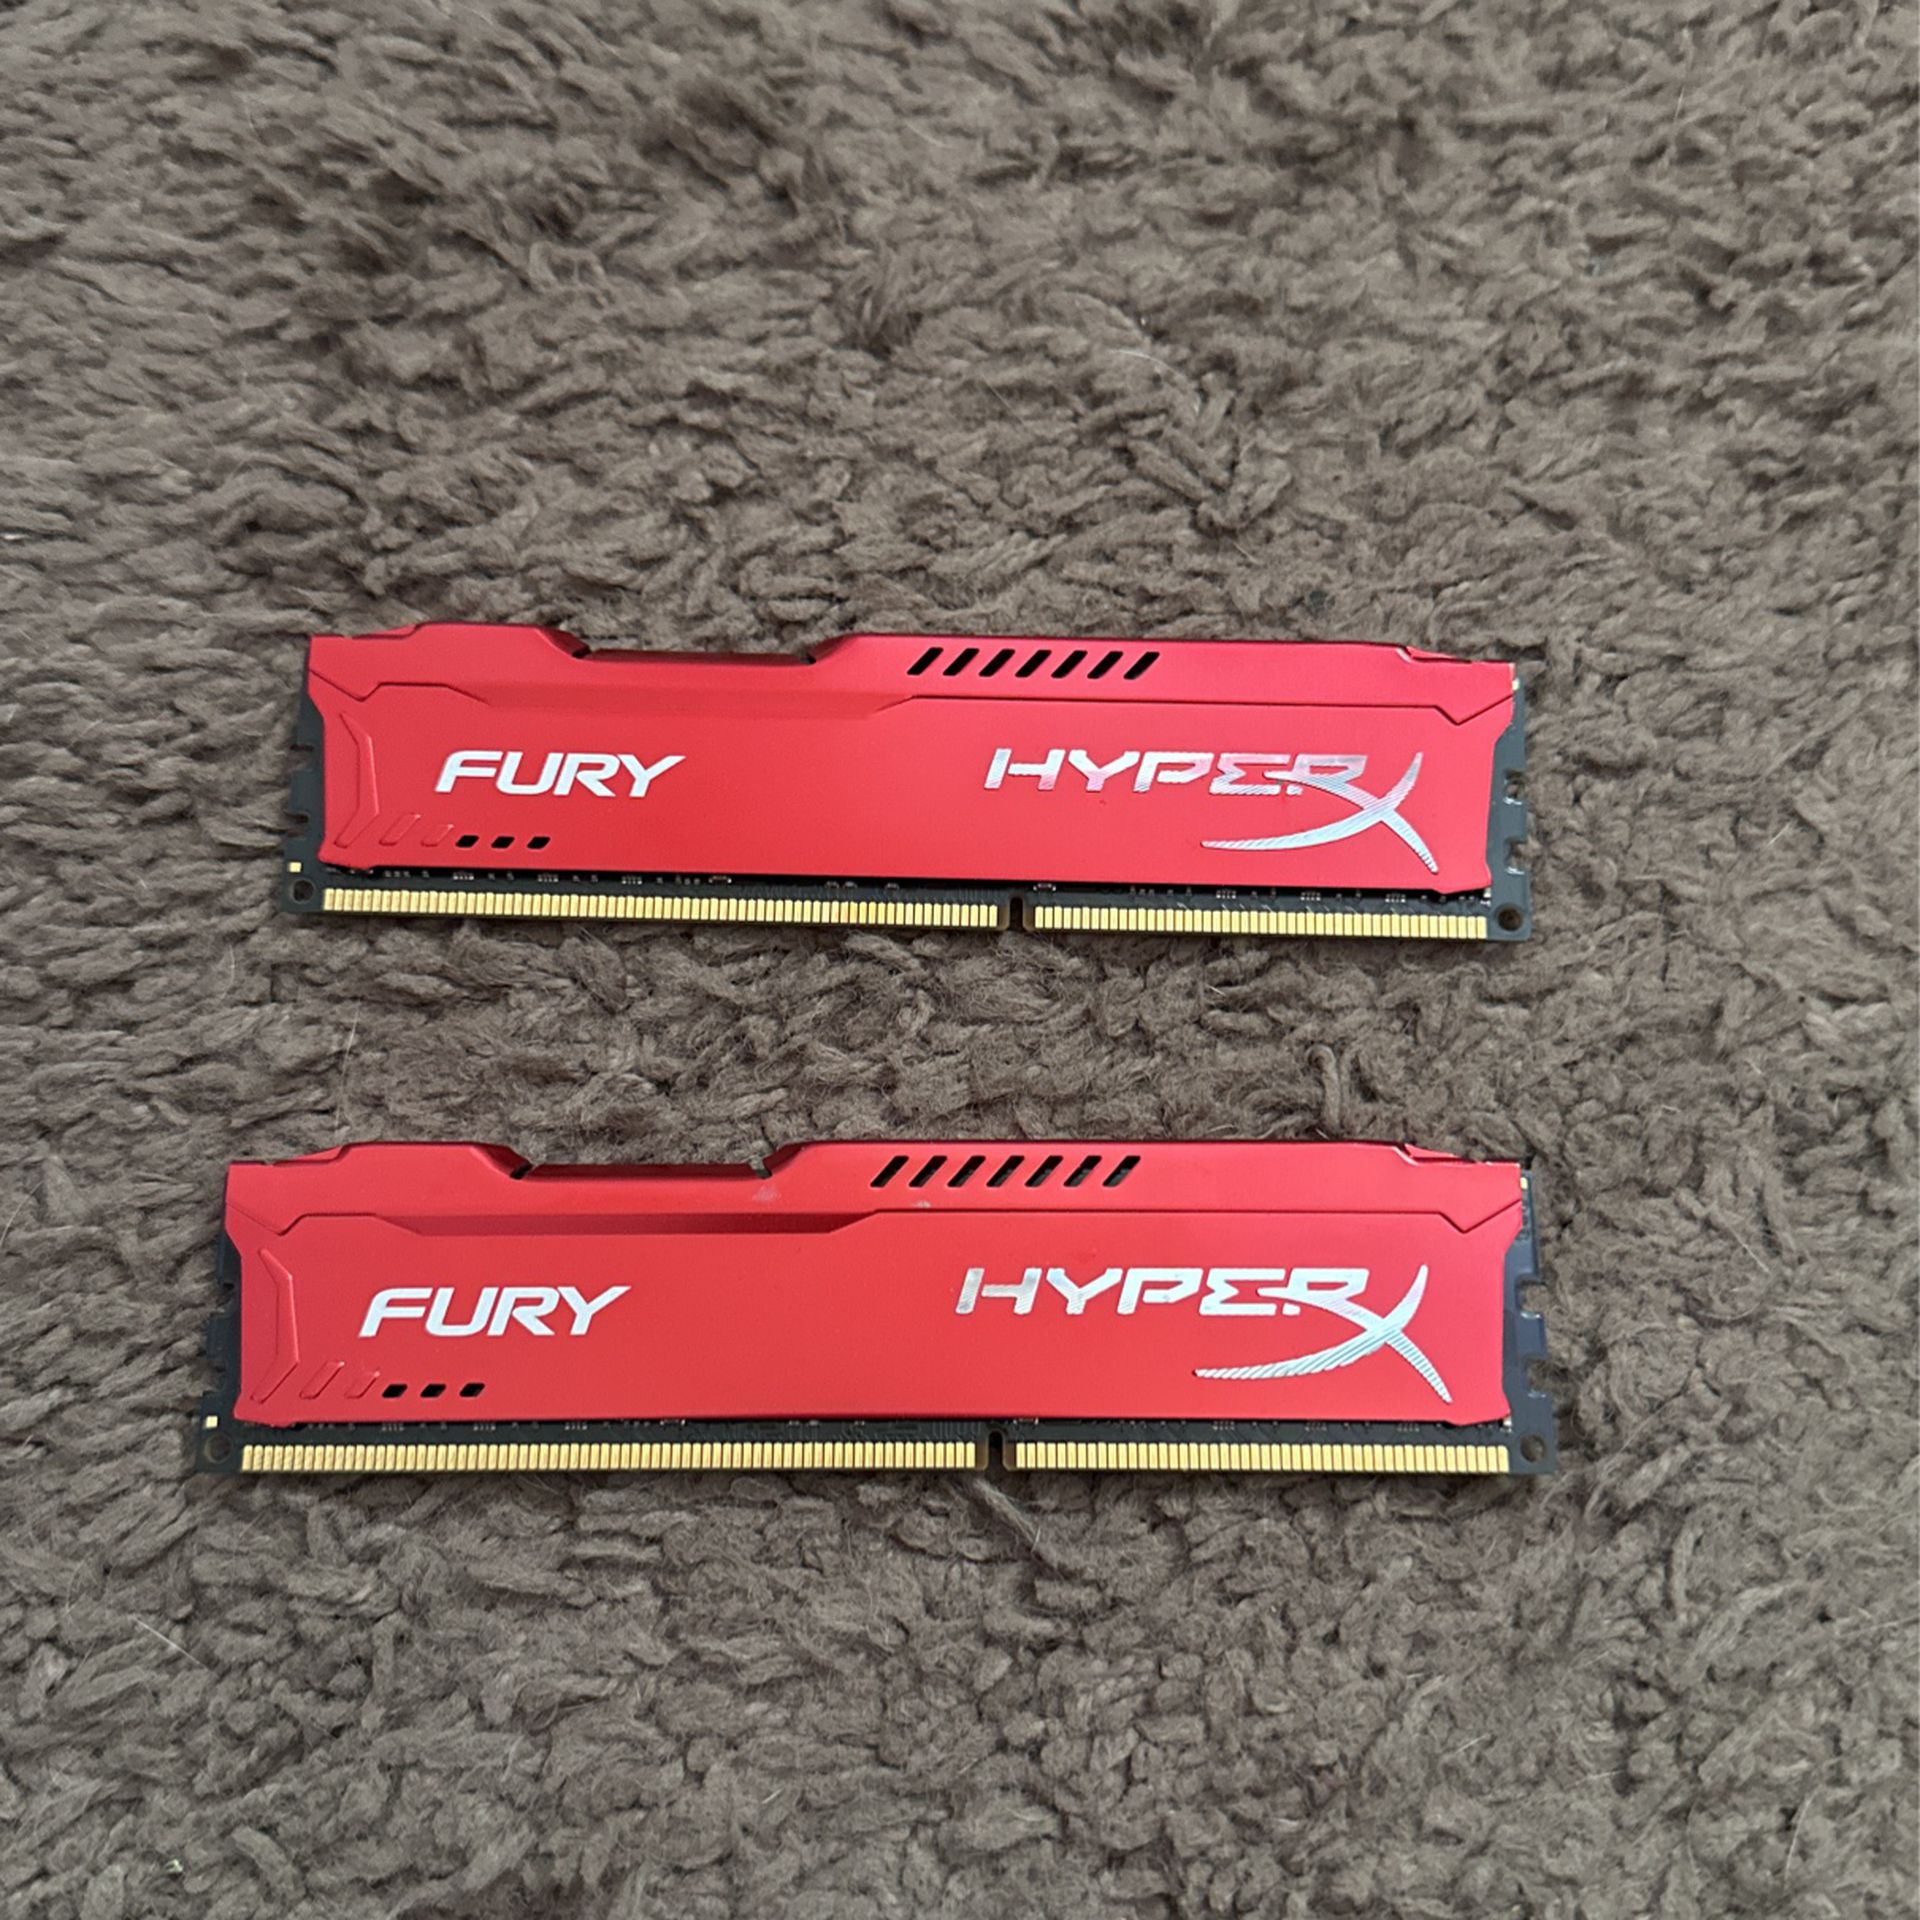 HyperX DDR3 Fury RAM